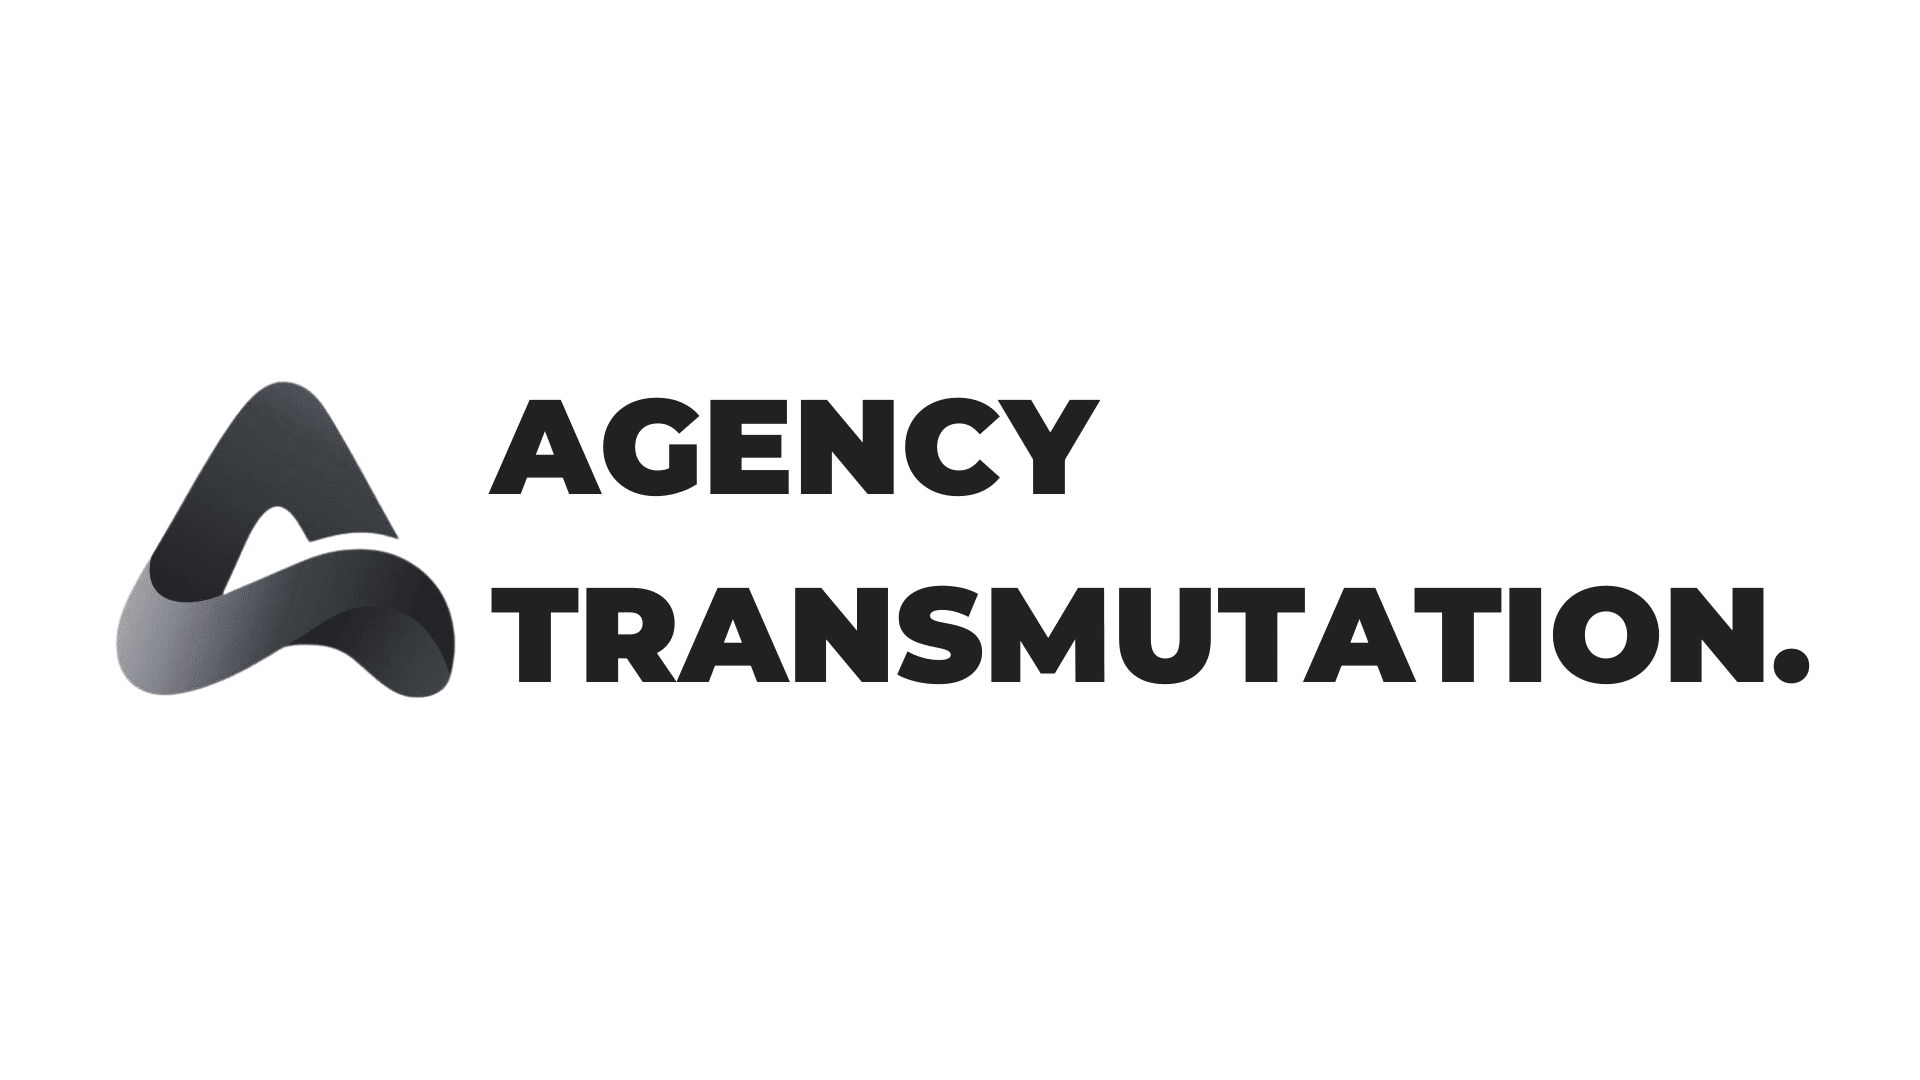 Agency Transmutation - Montell Gordon